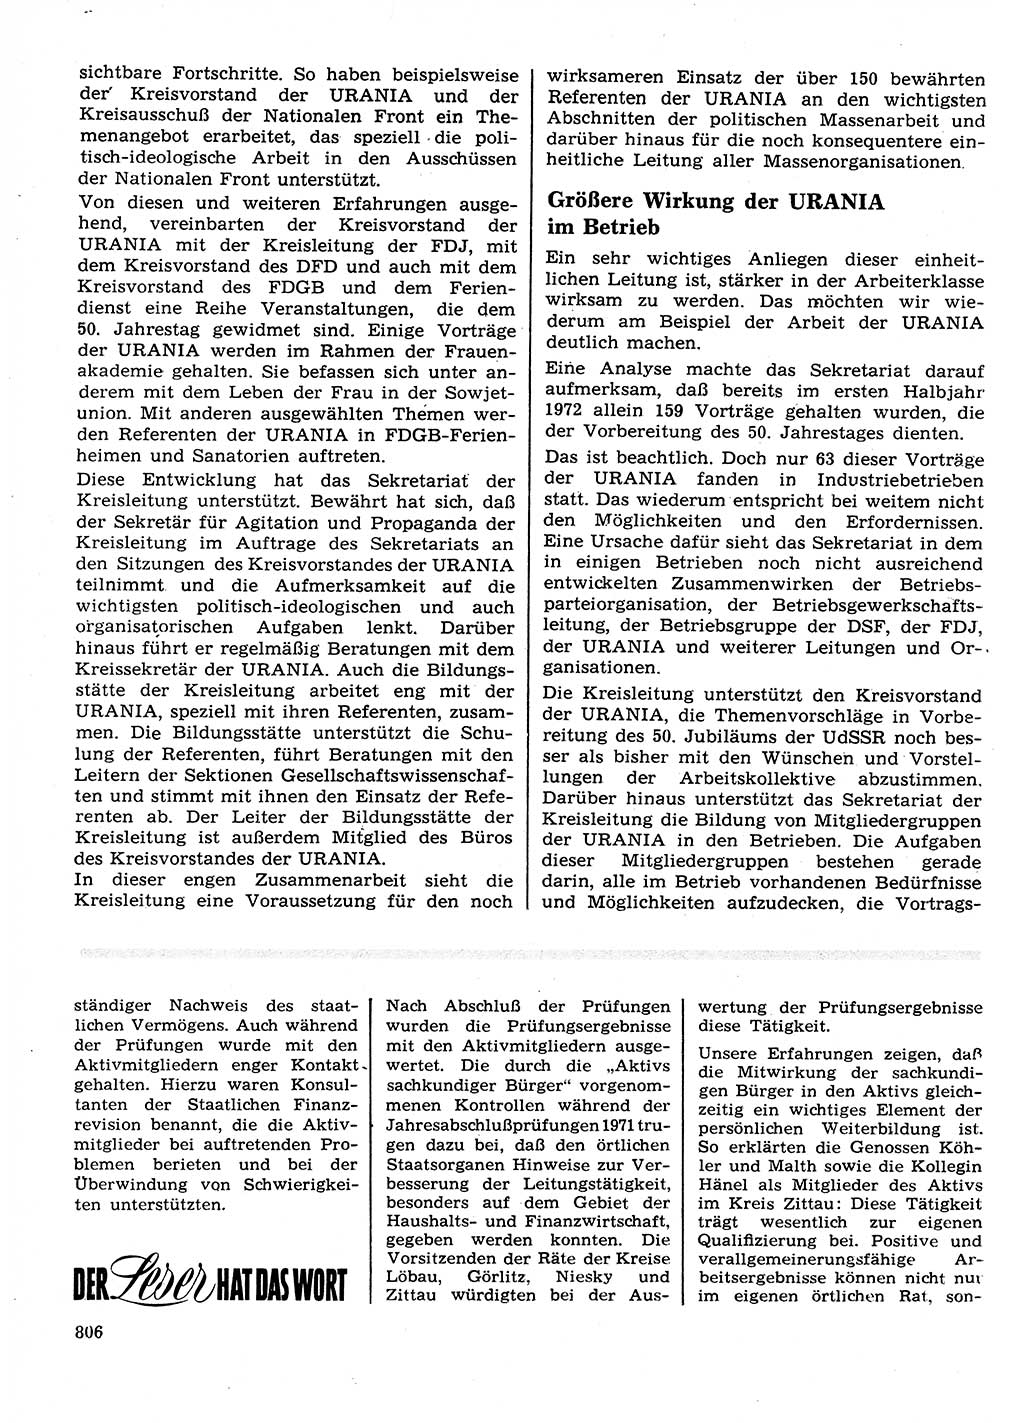 Neuer Weg (NW), Organ des Zentralkomitees (ZK) der SED (Sozialistische Einheitspartei Deutschlands) für Fragen des Parteilebens, 27. Jahrgang [Deutsche Demokratische Republik (DDR)] 1972, Seite 806 (NW ZK SED DDR 1972, S. 806)